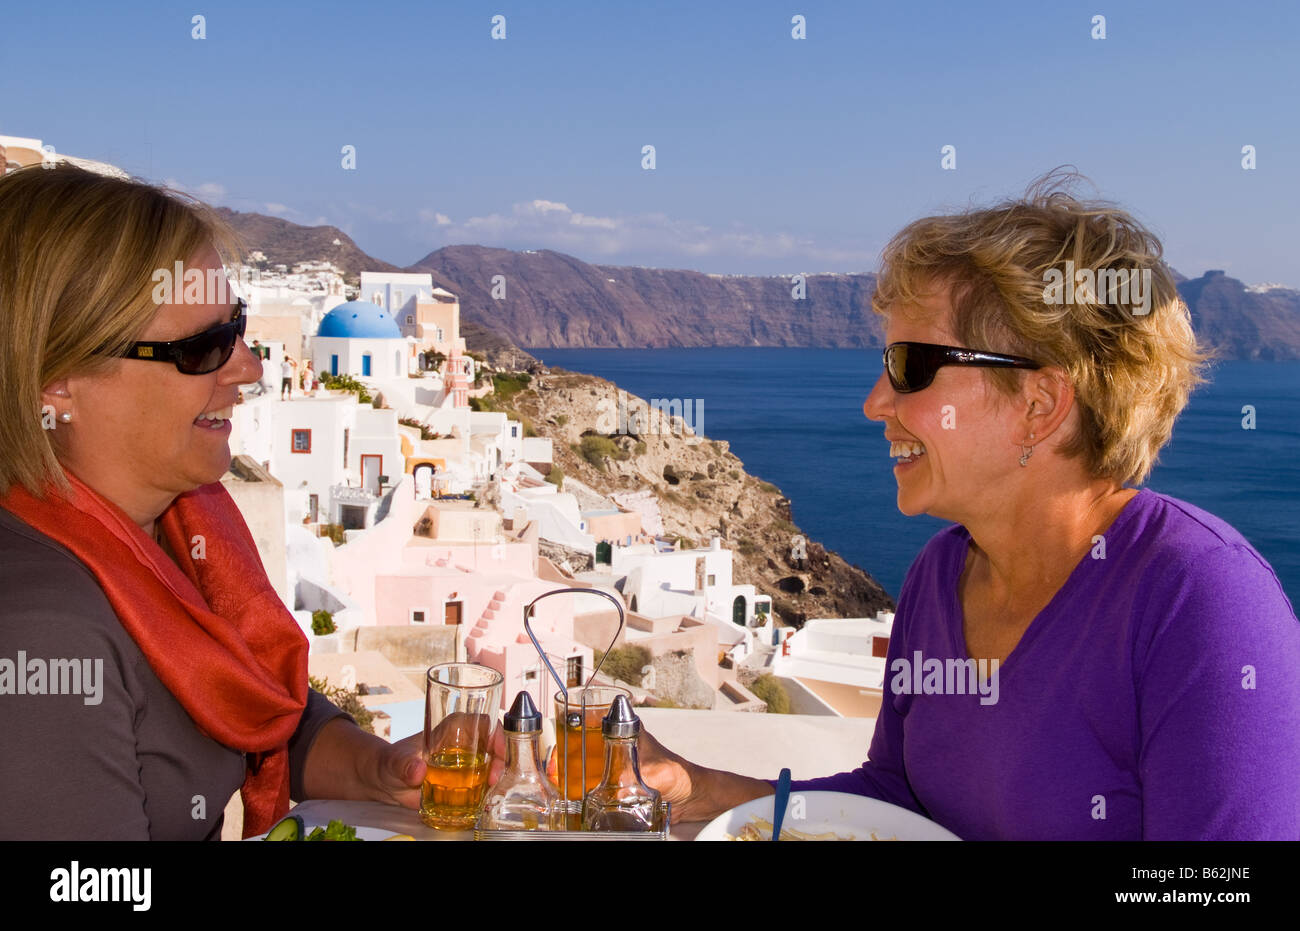 Beau village d'Oia avec de vieux bâtiments blancs comme deux touristes partager un verre en regardant vers le bas dans les îles grecques de Santorin Banque D'Images